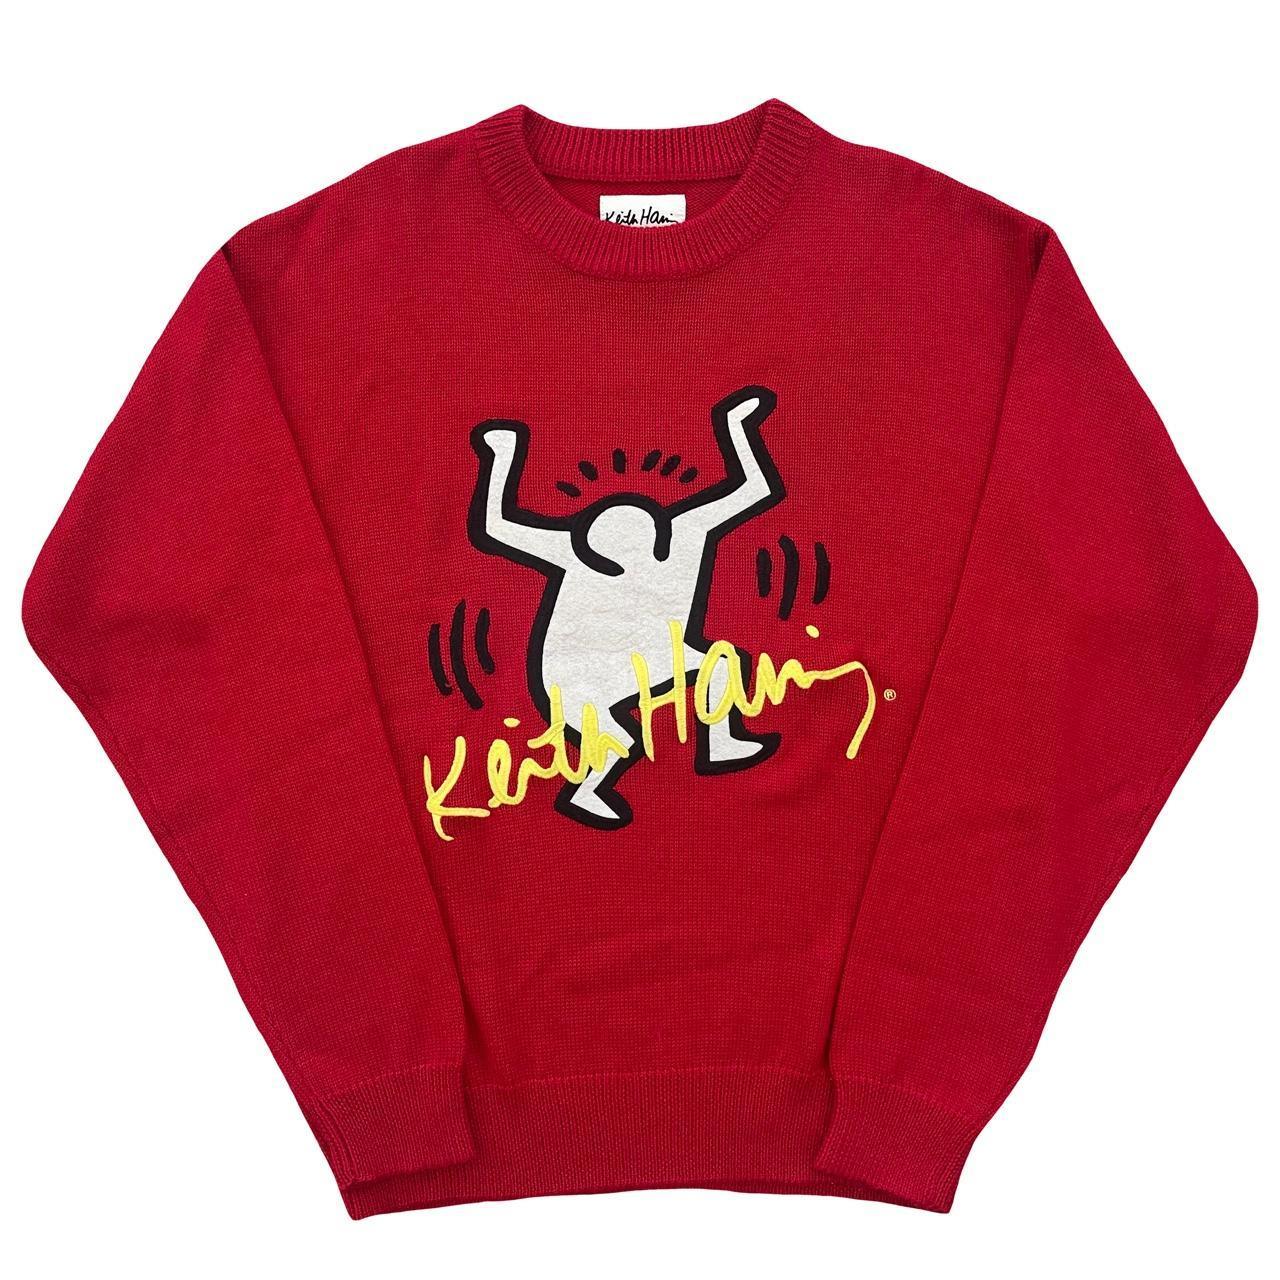 Joyrich x Keith Haring Sweatshirt - Known Source